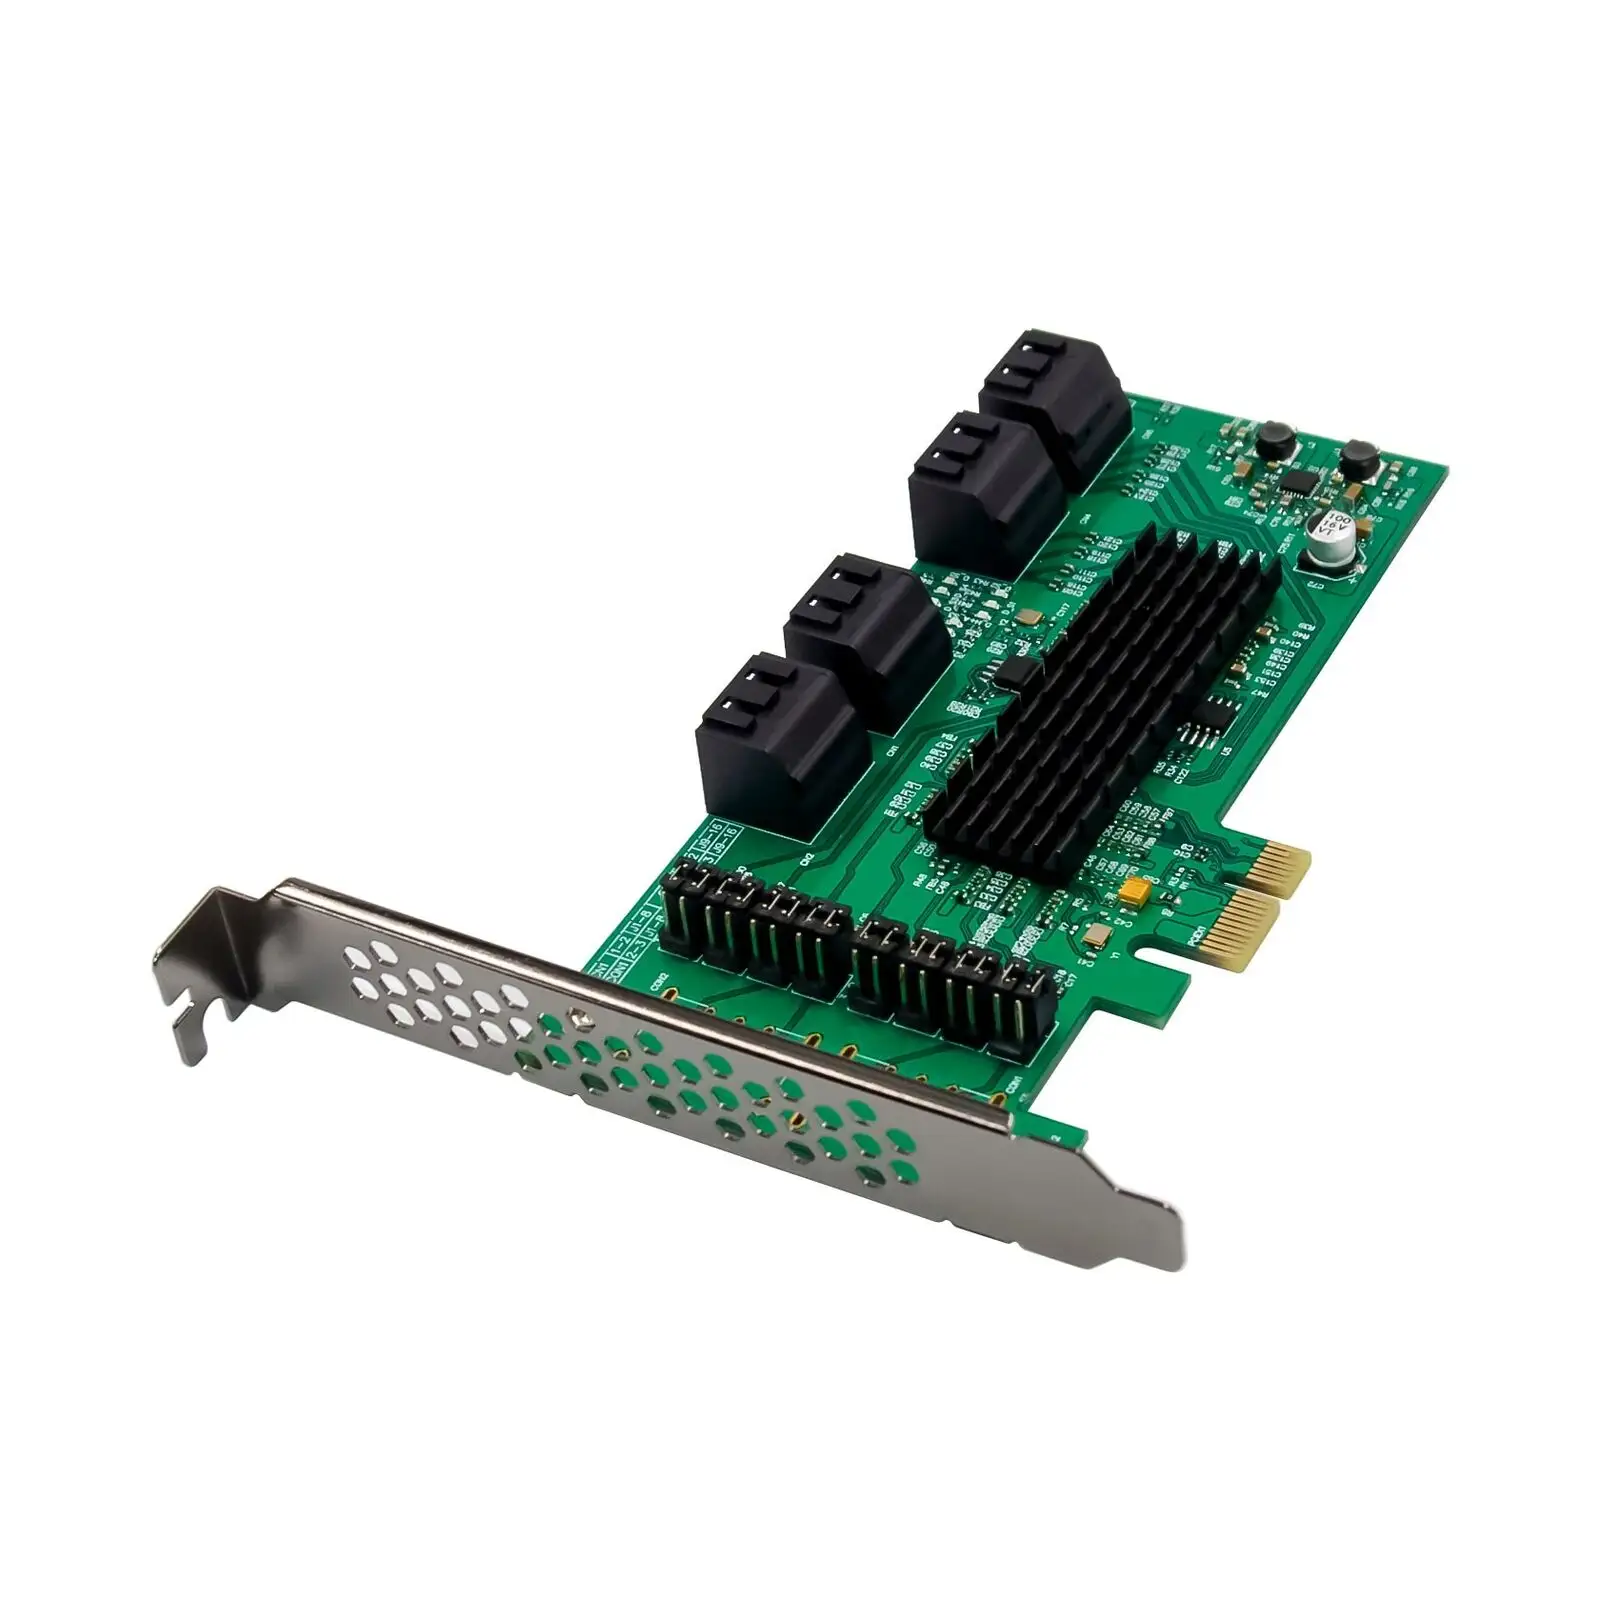 8พอร์ต SATA3.0 PCI Express การ์ดขยาย PCI-E SATA ควบคุมการ์ด Marvell 88SE9215ชิปเซ็ต